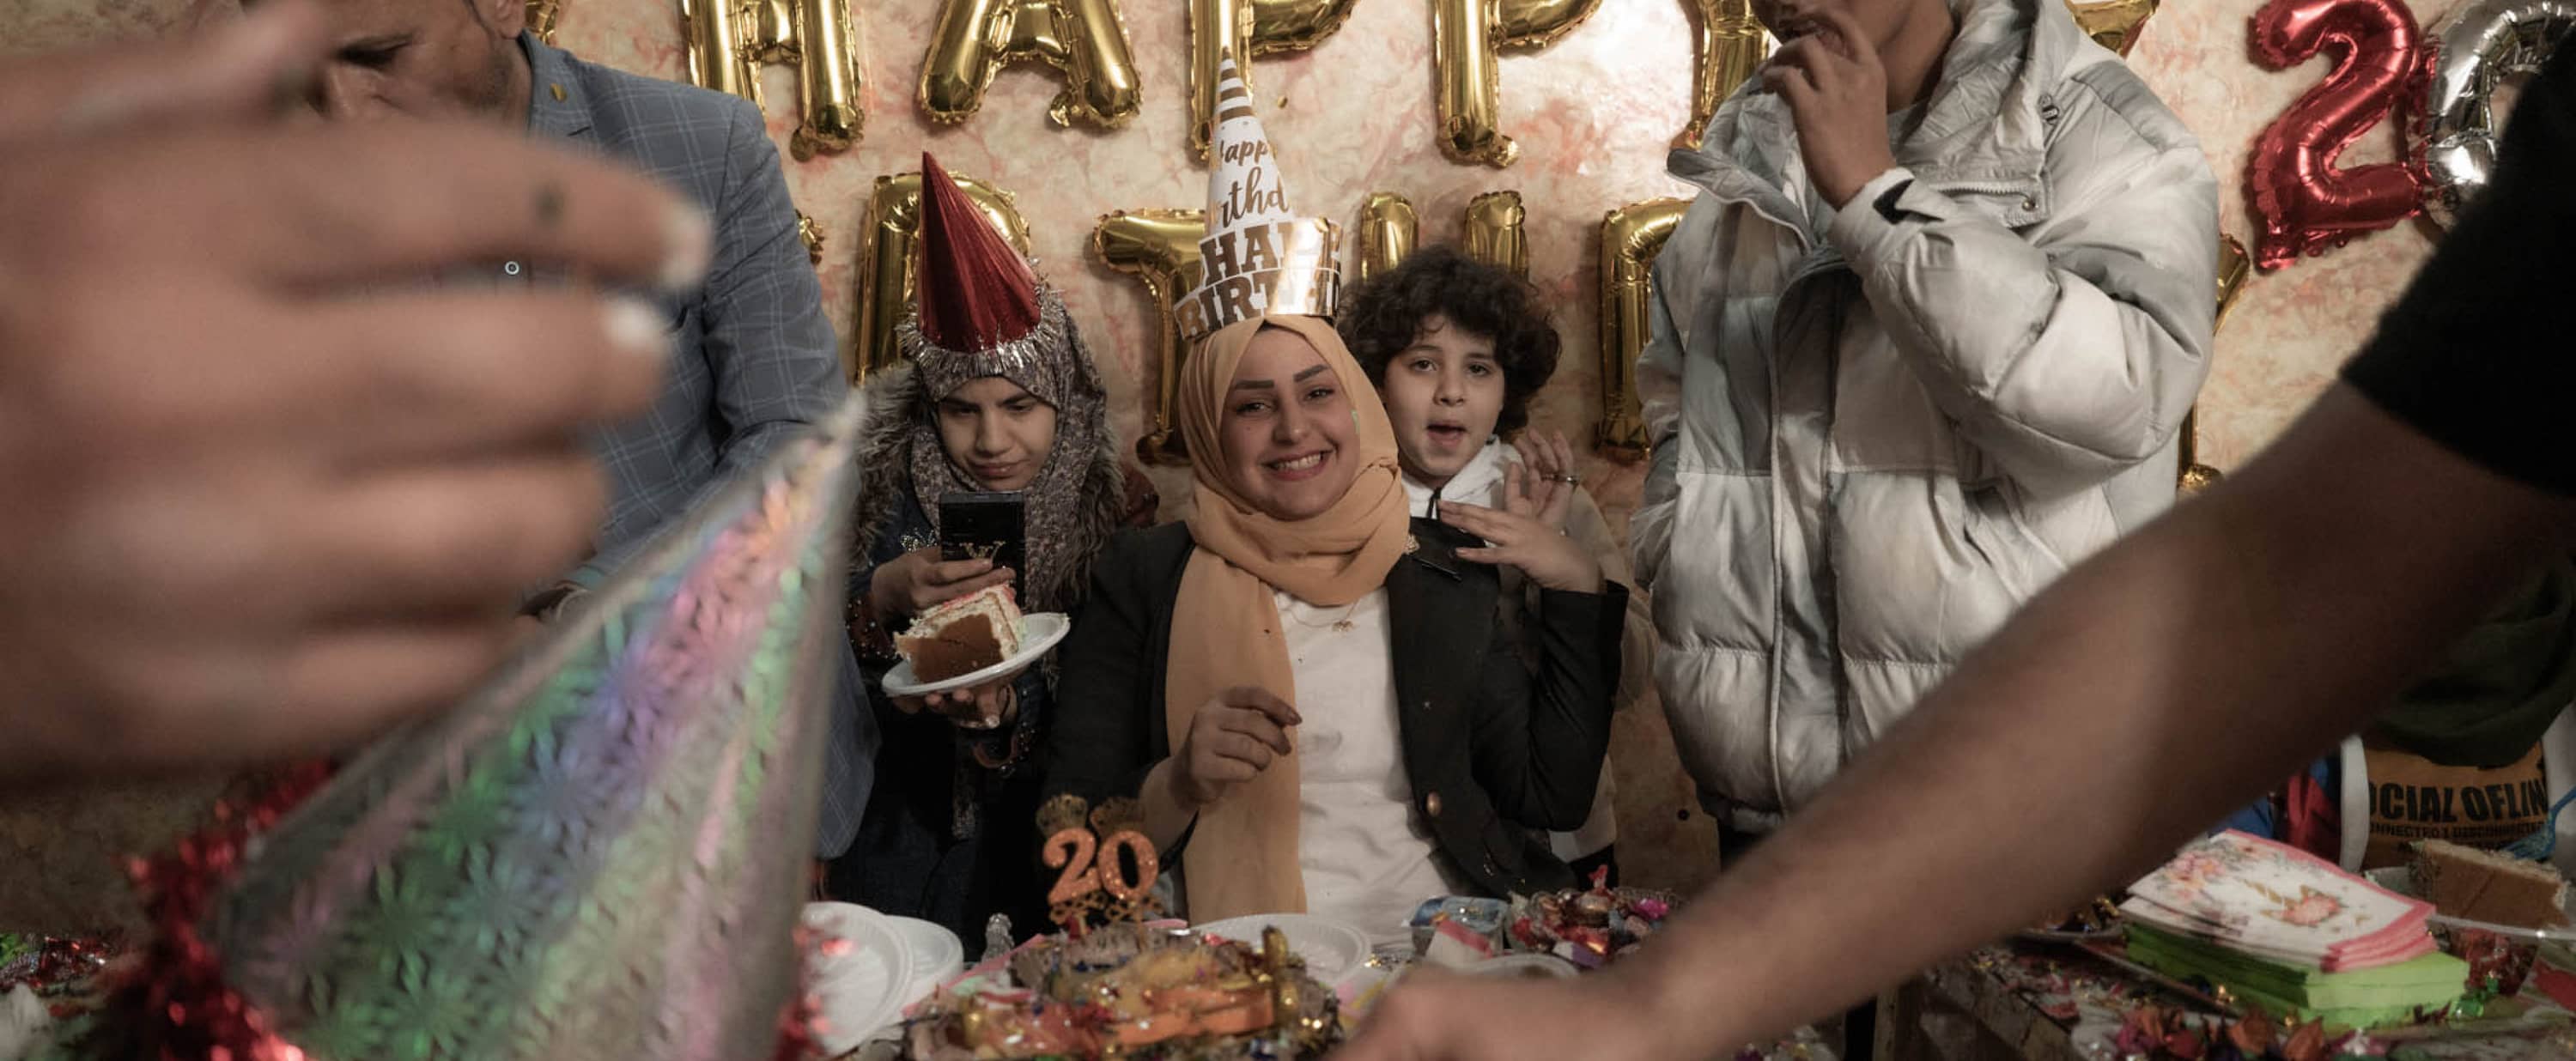 Banin Karim at her birthday celebration.